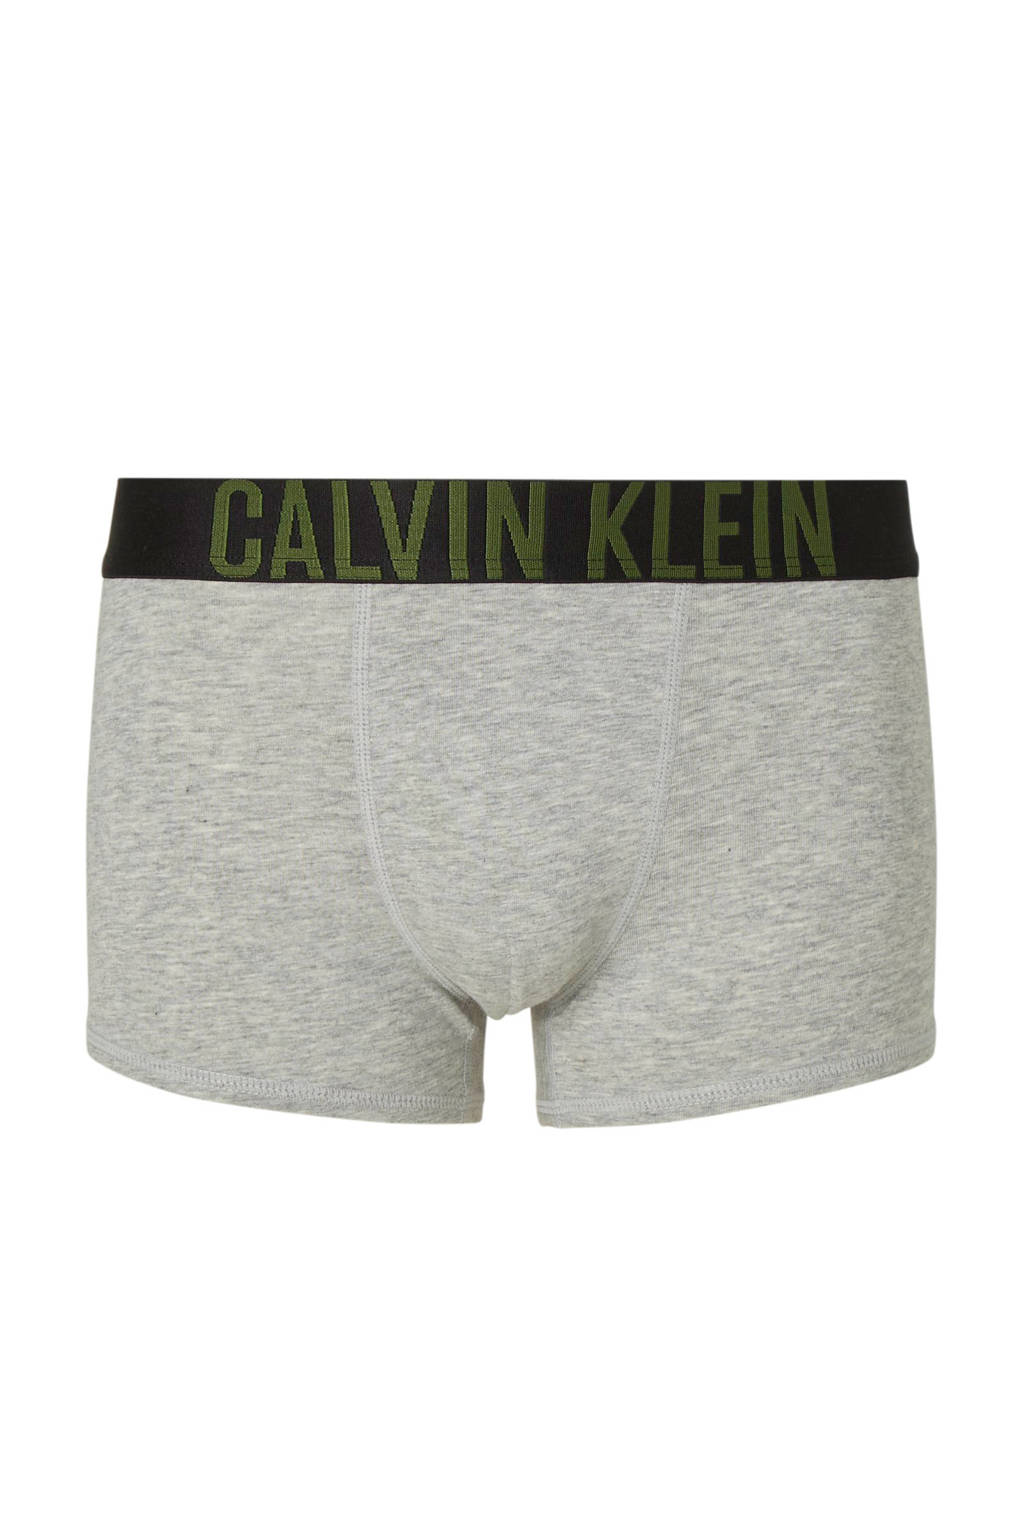 moed bewaker Ga trouwen CALVIN KLEIN UNDERWEAR boxershort - set van 2 donkergroen/grijs melange |  wehkamp